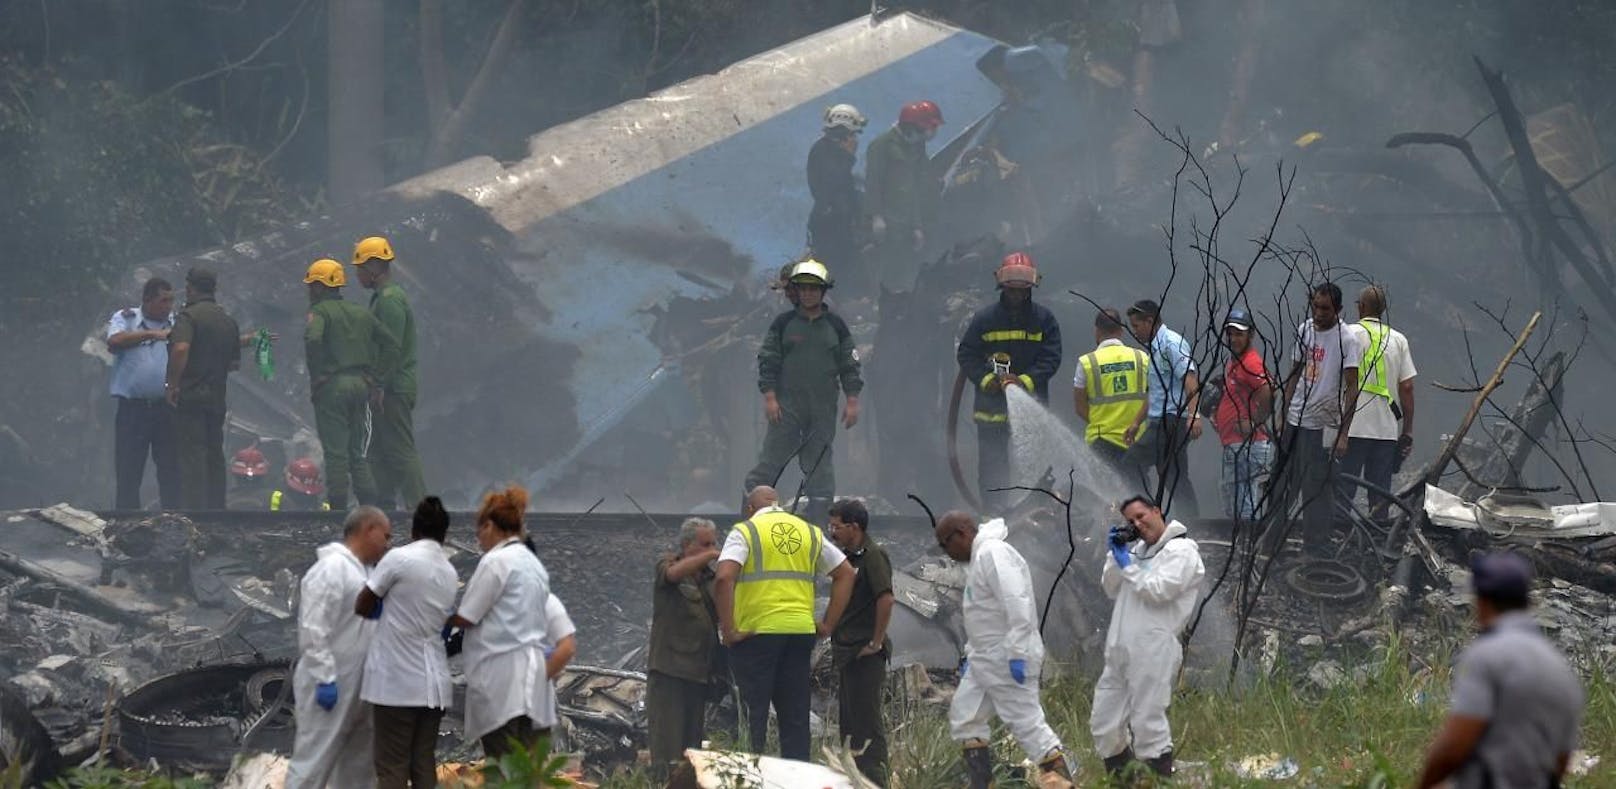 Über 100 Tote bei Flugzeug-Absturz in Kuba